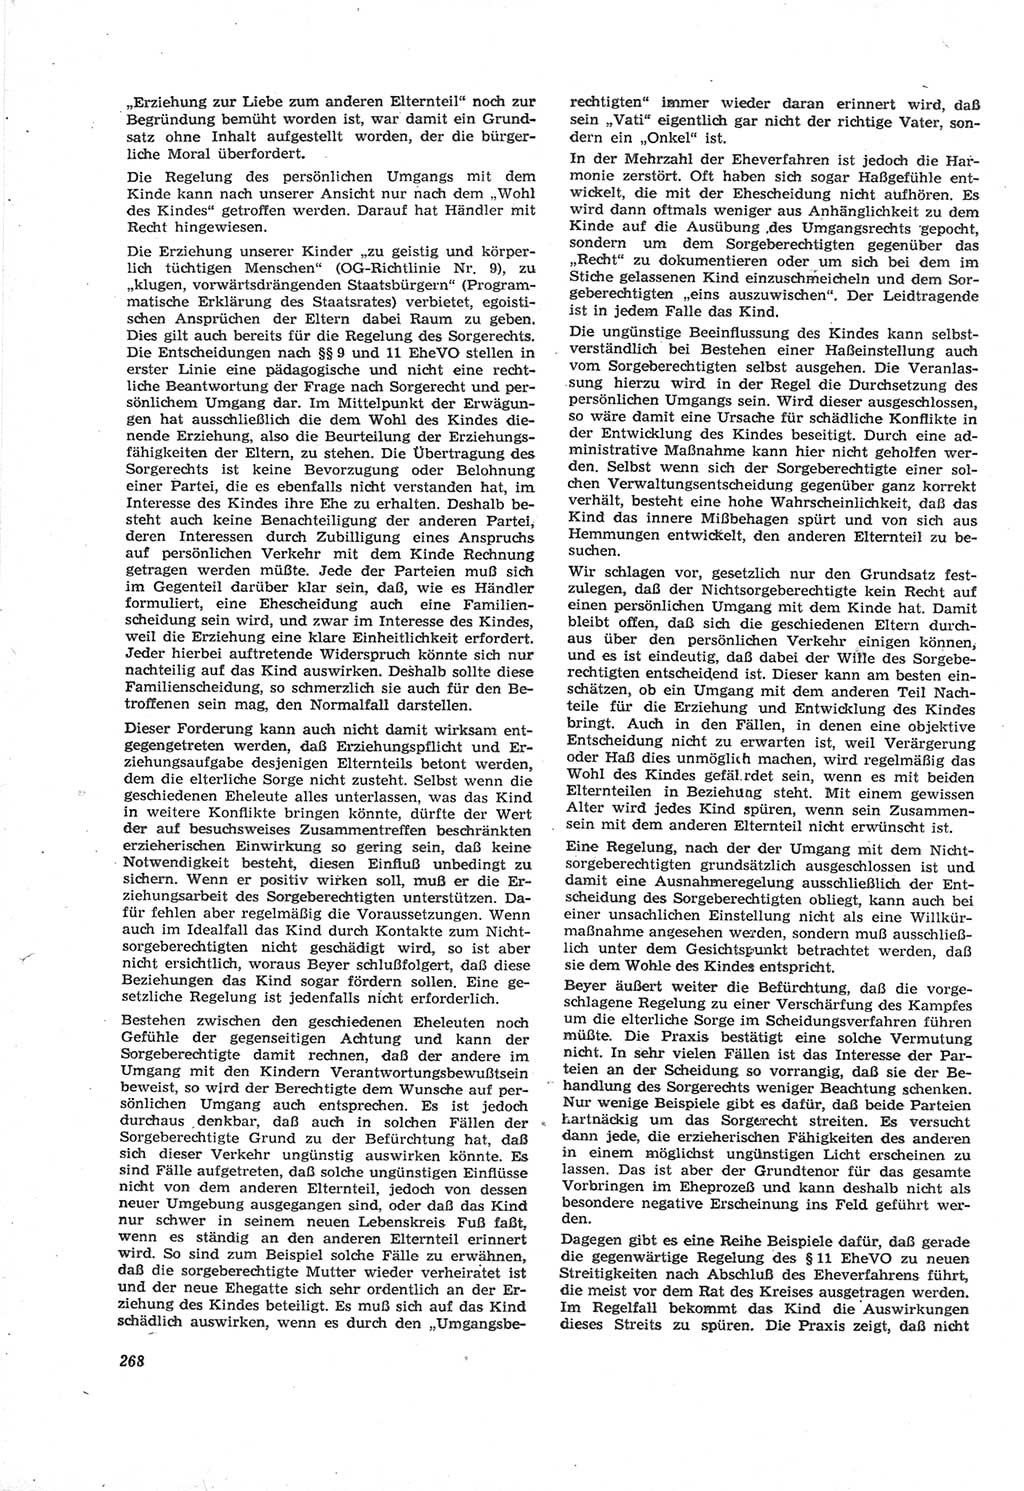 Neue Justiz (NJ), Zeitschrift für Recht und Rechtswissenschaft [Deutsche Demokratische Republik (DDR)], 18. Jahrgang 1964, Seite 268 (NJ DDR 1964, S. 268)